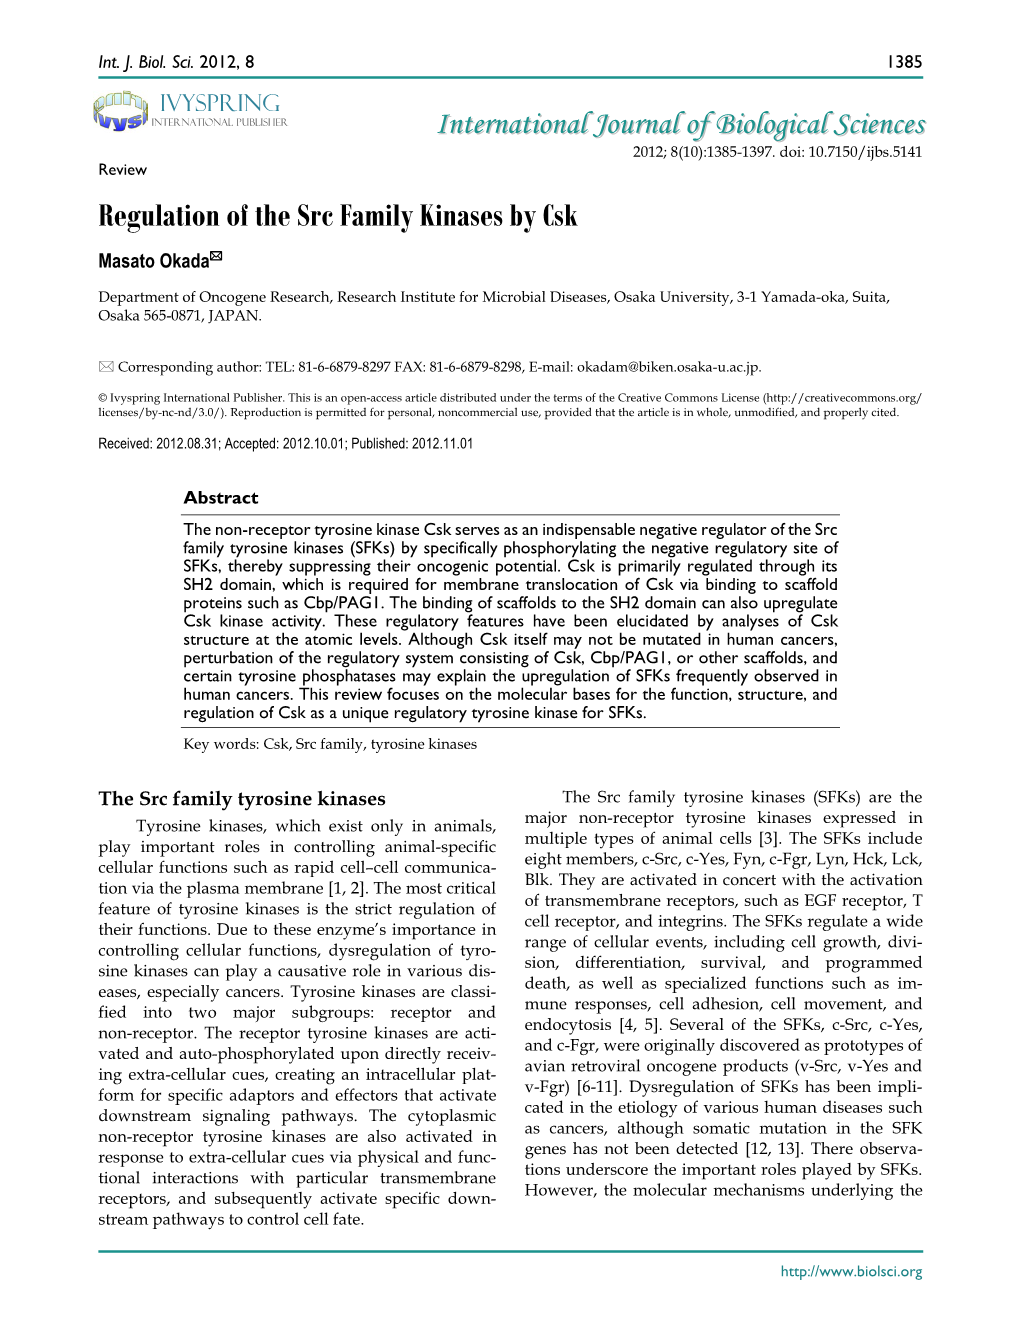 Regulation of the Src Family Kinases by Csk Masato Okada